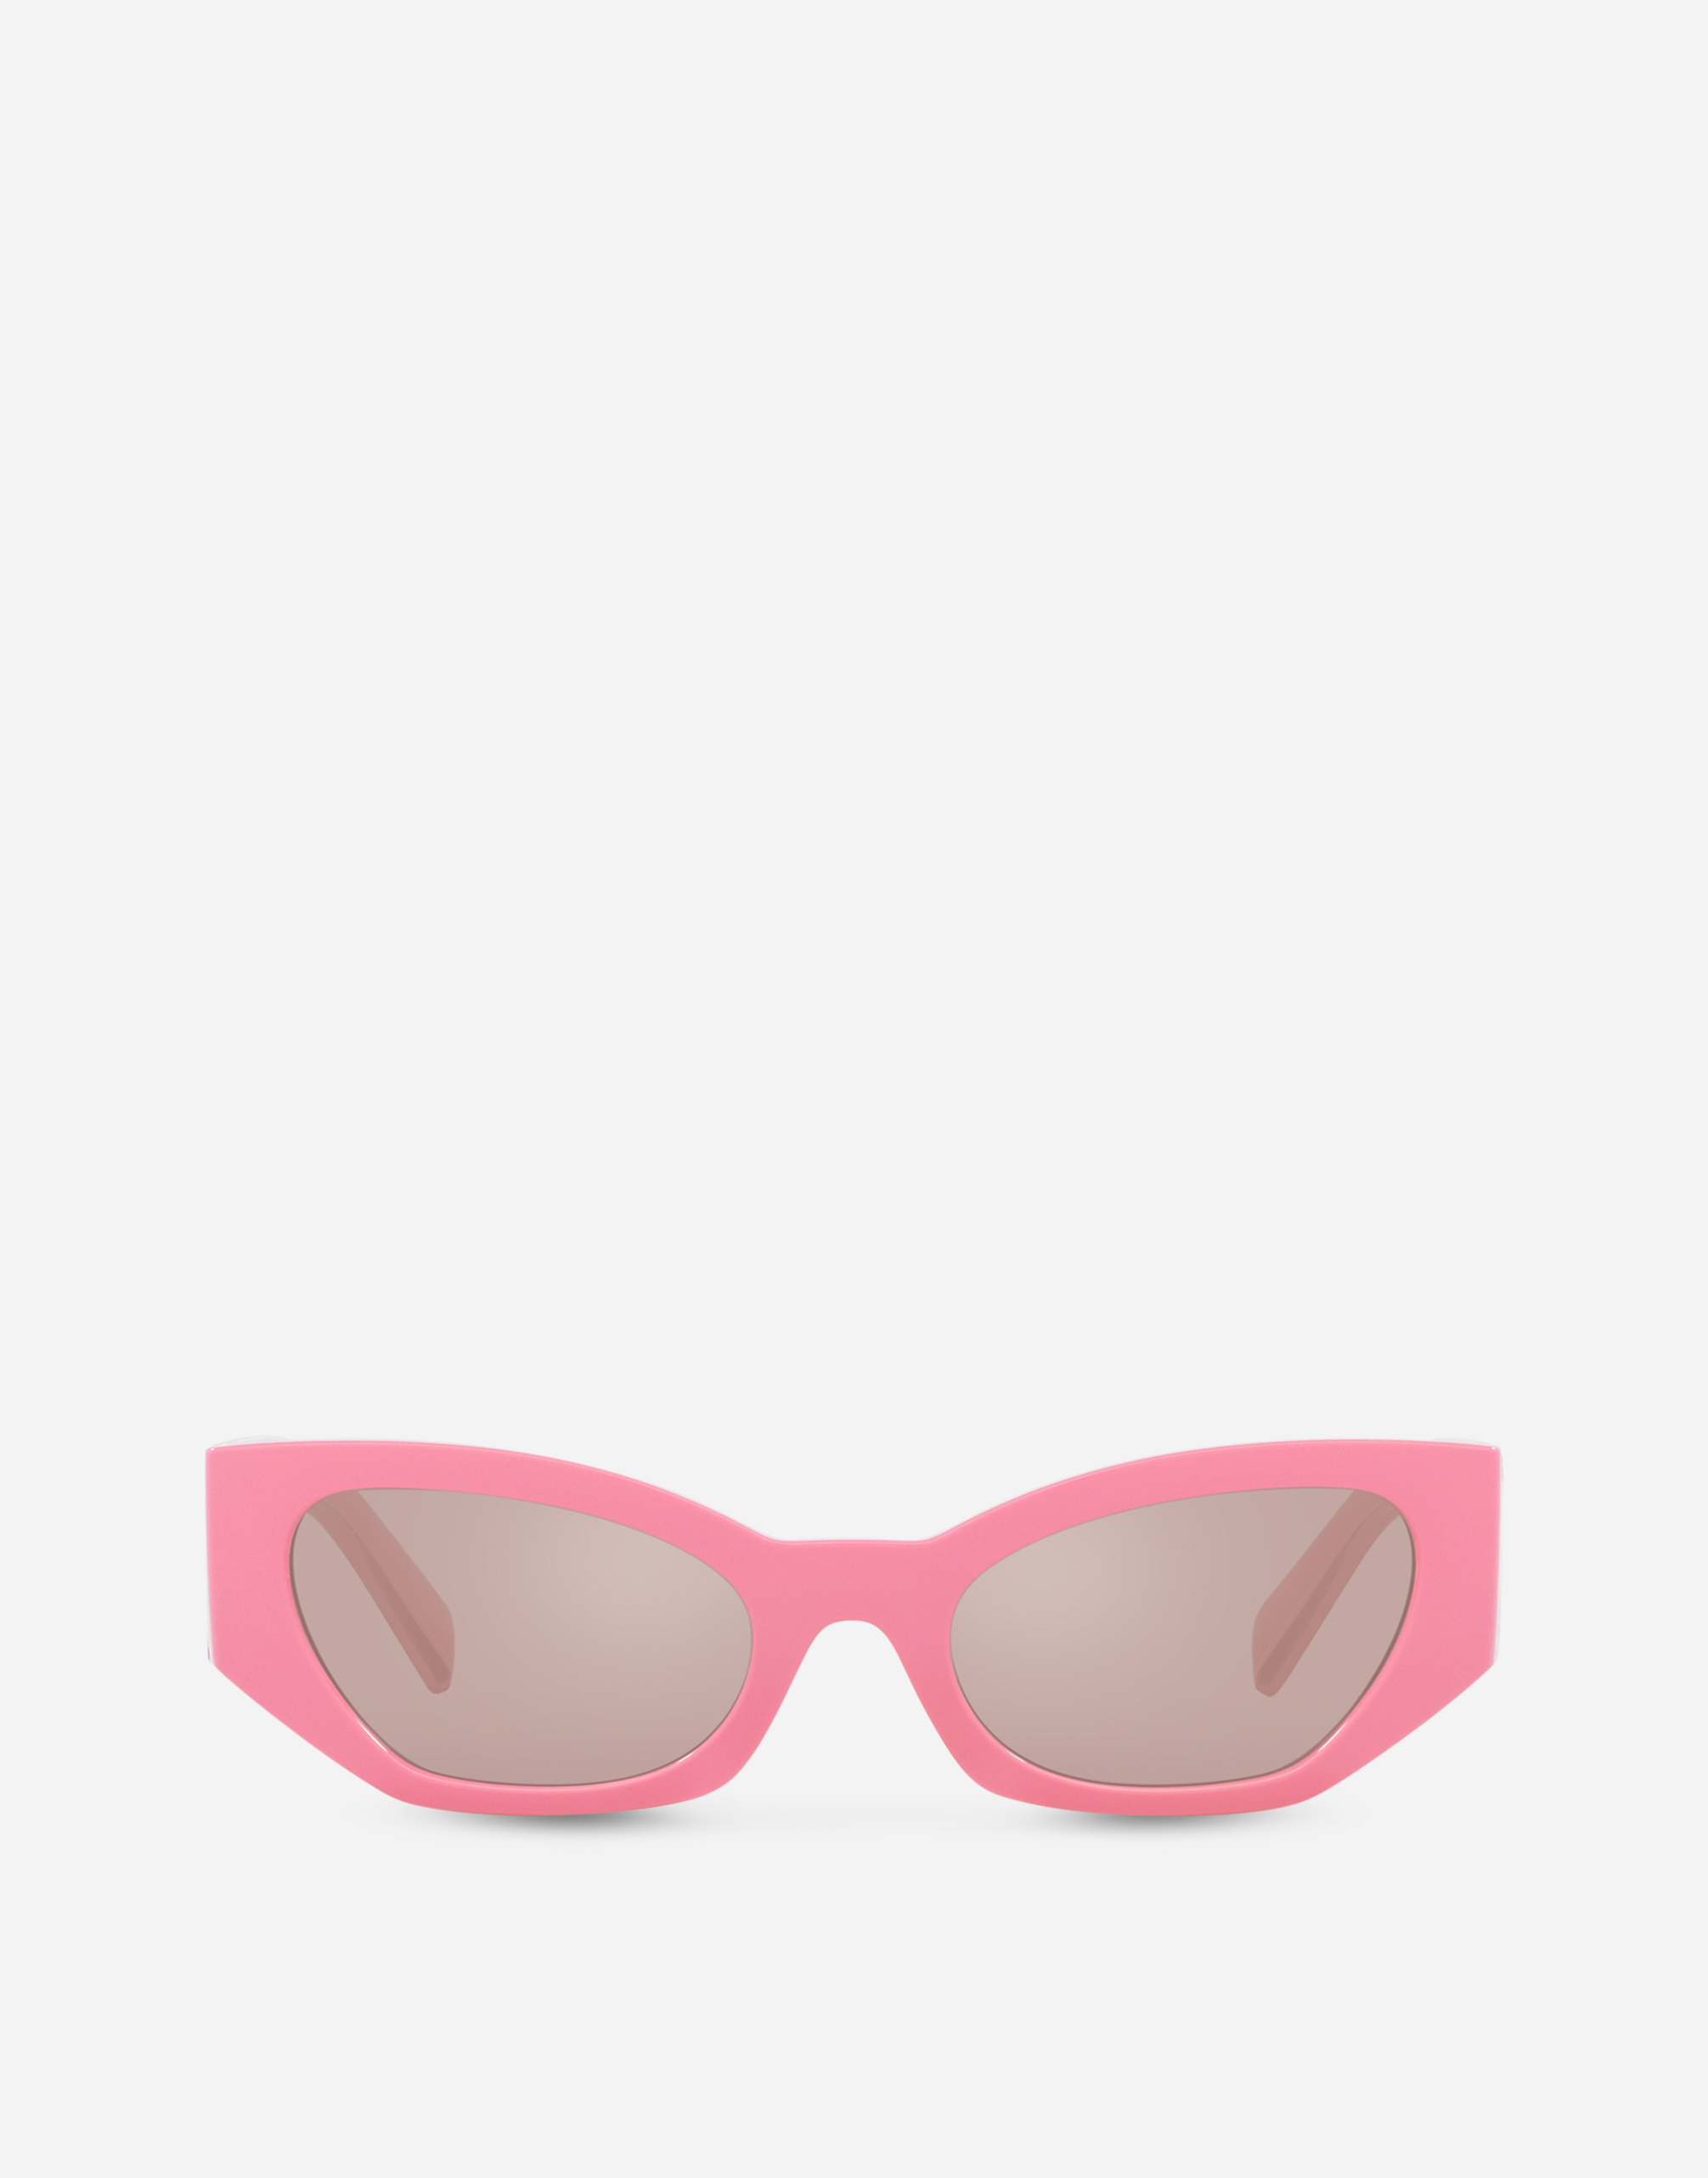 DG Elastic Sunglasses in Pink